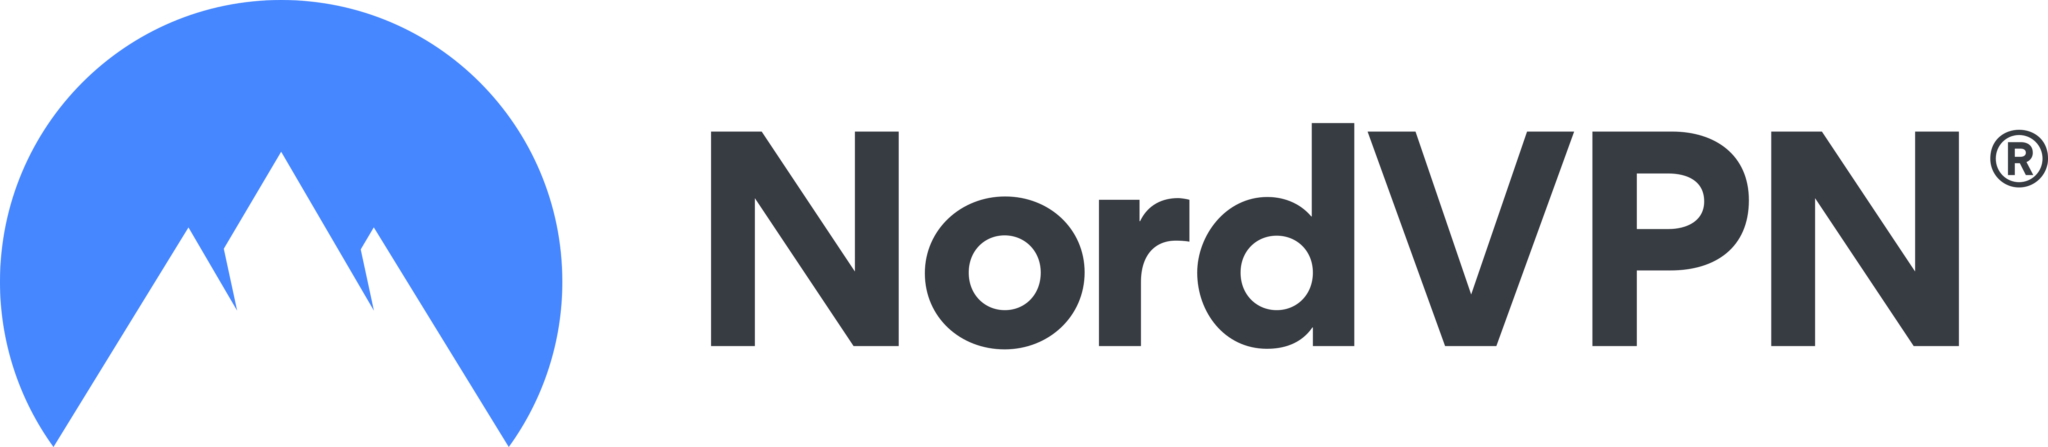 nordvpn profile download